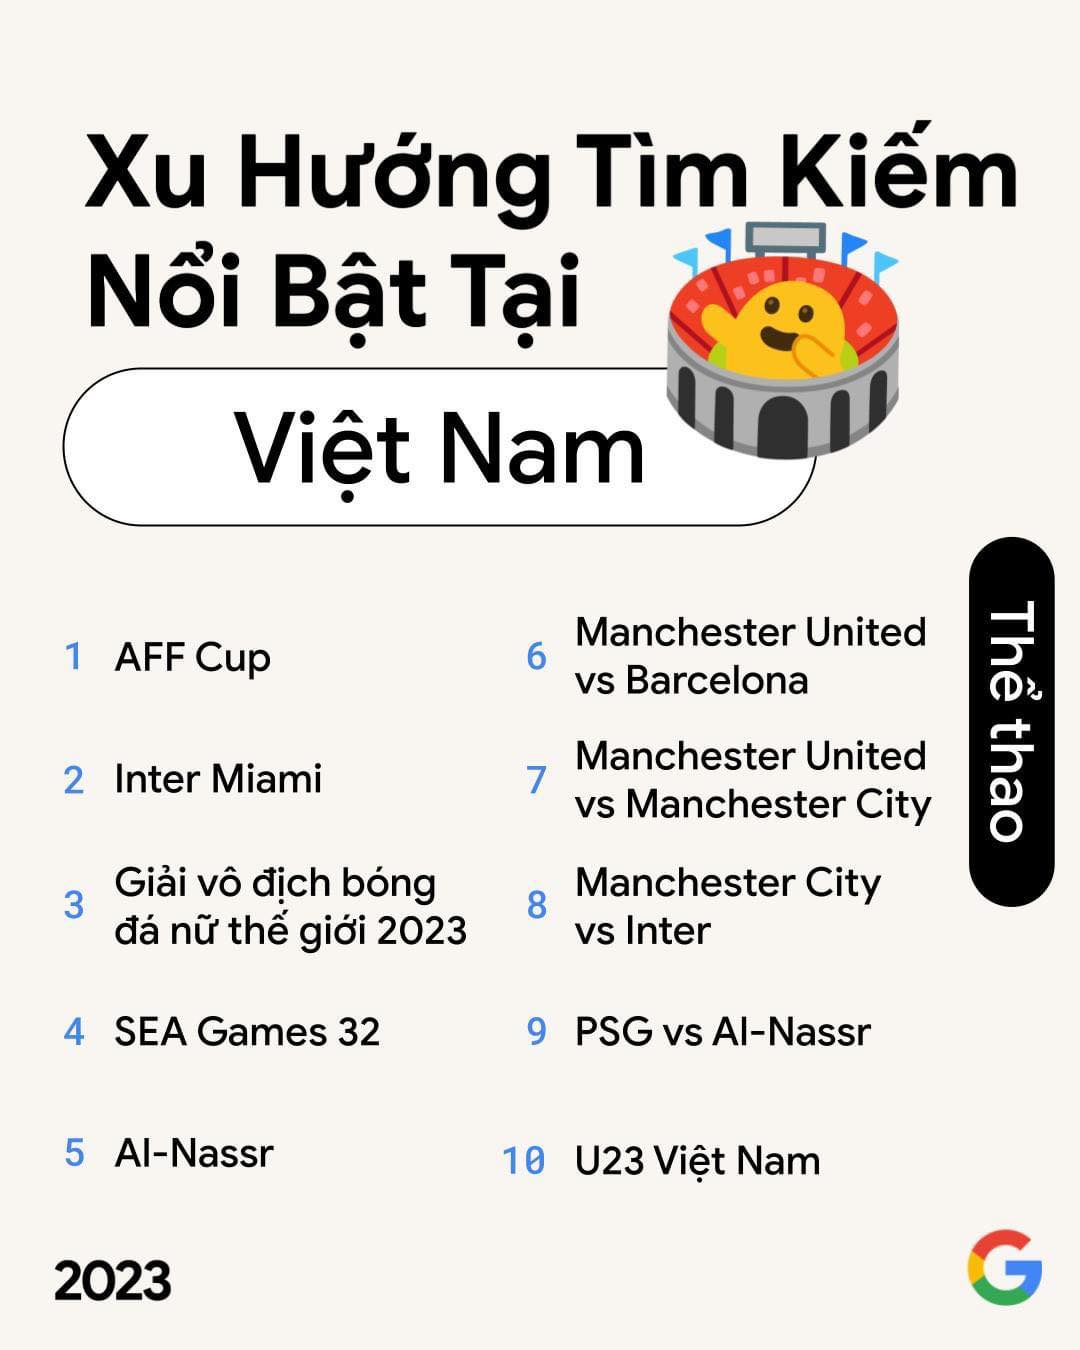 Người Việt tìm kiếm 'AFF Cup' nhiều nhất trong mảng thể thao của Google năm 2023